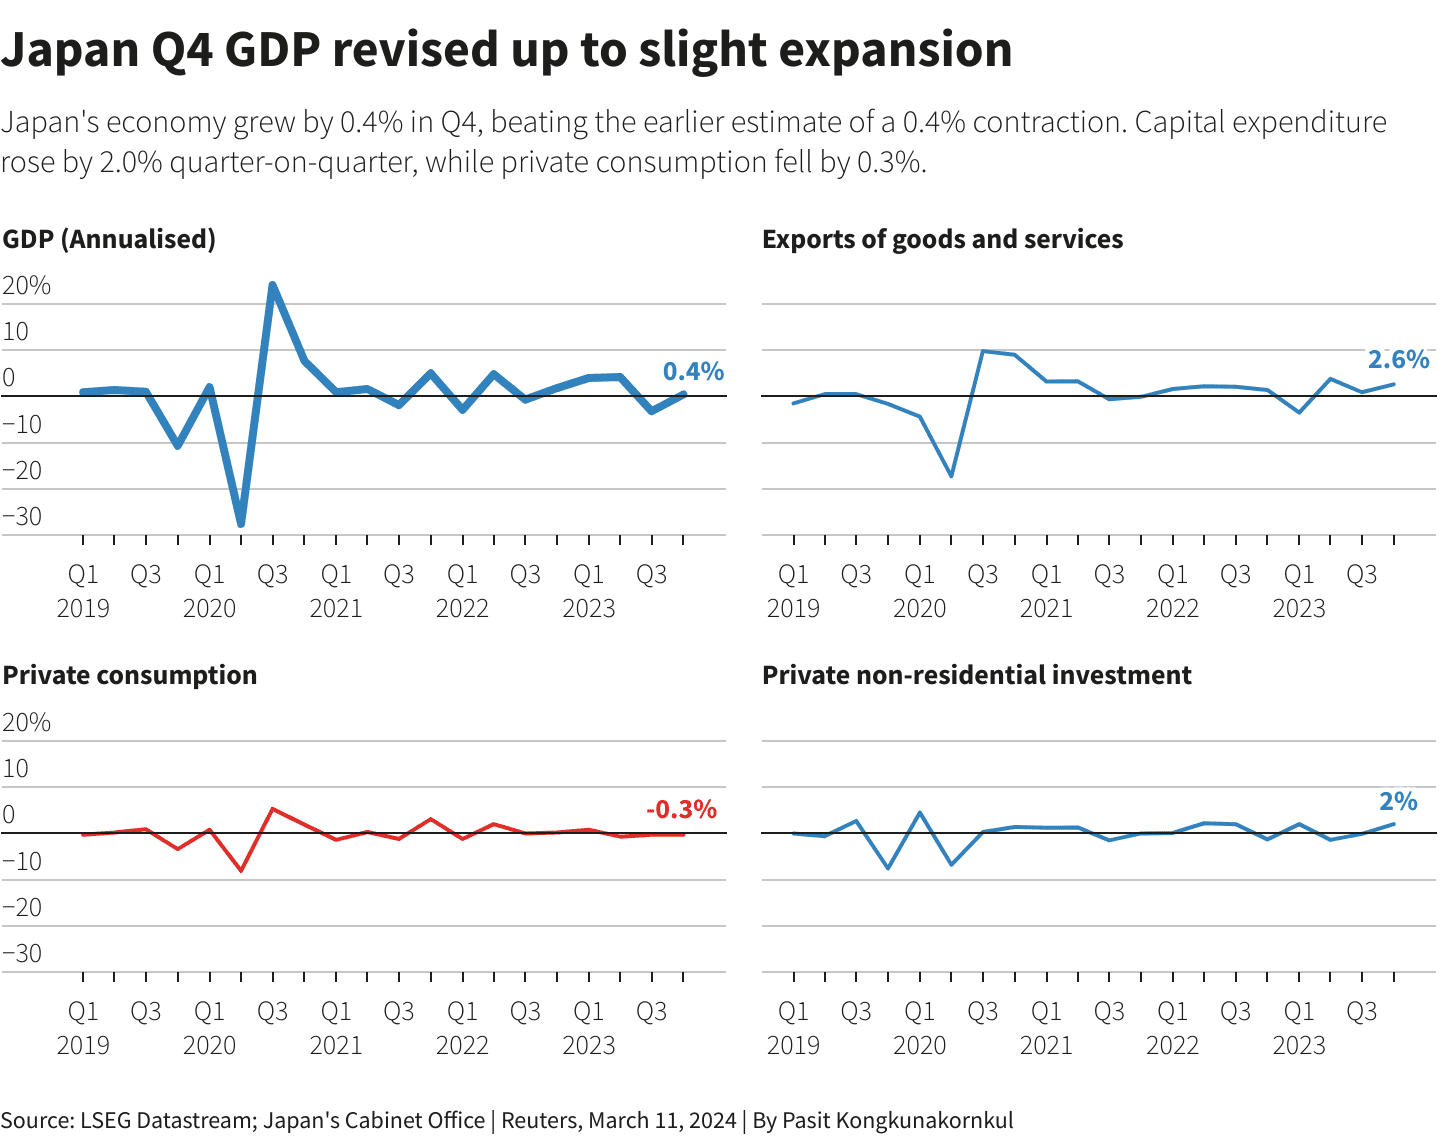 Nhật Bản thoát suy thoái kỹ thuật từ dữ liệu GDP sửa đổi Q4-2023